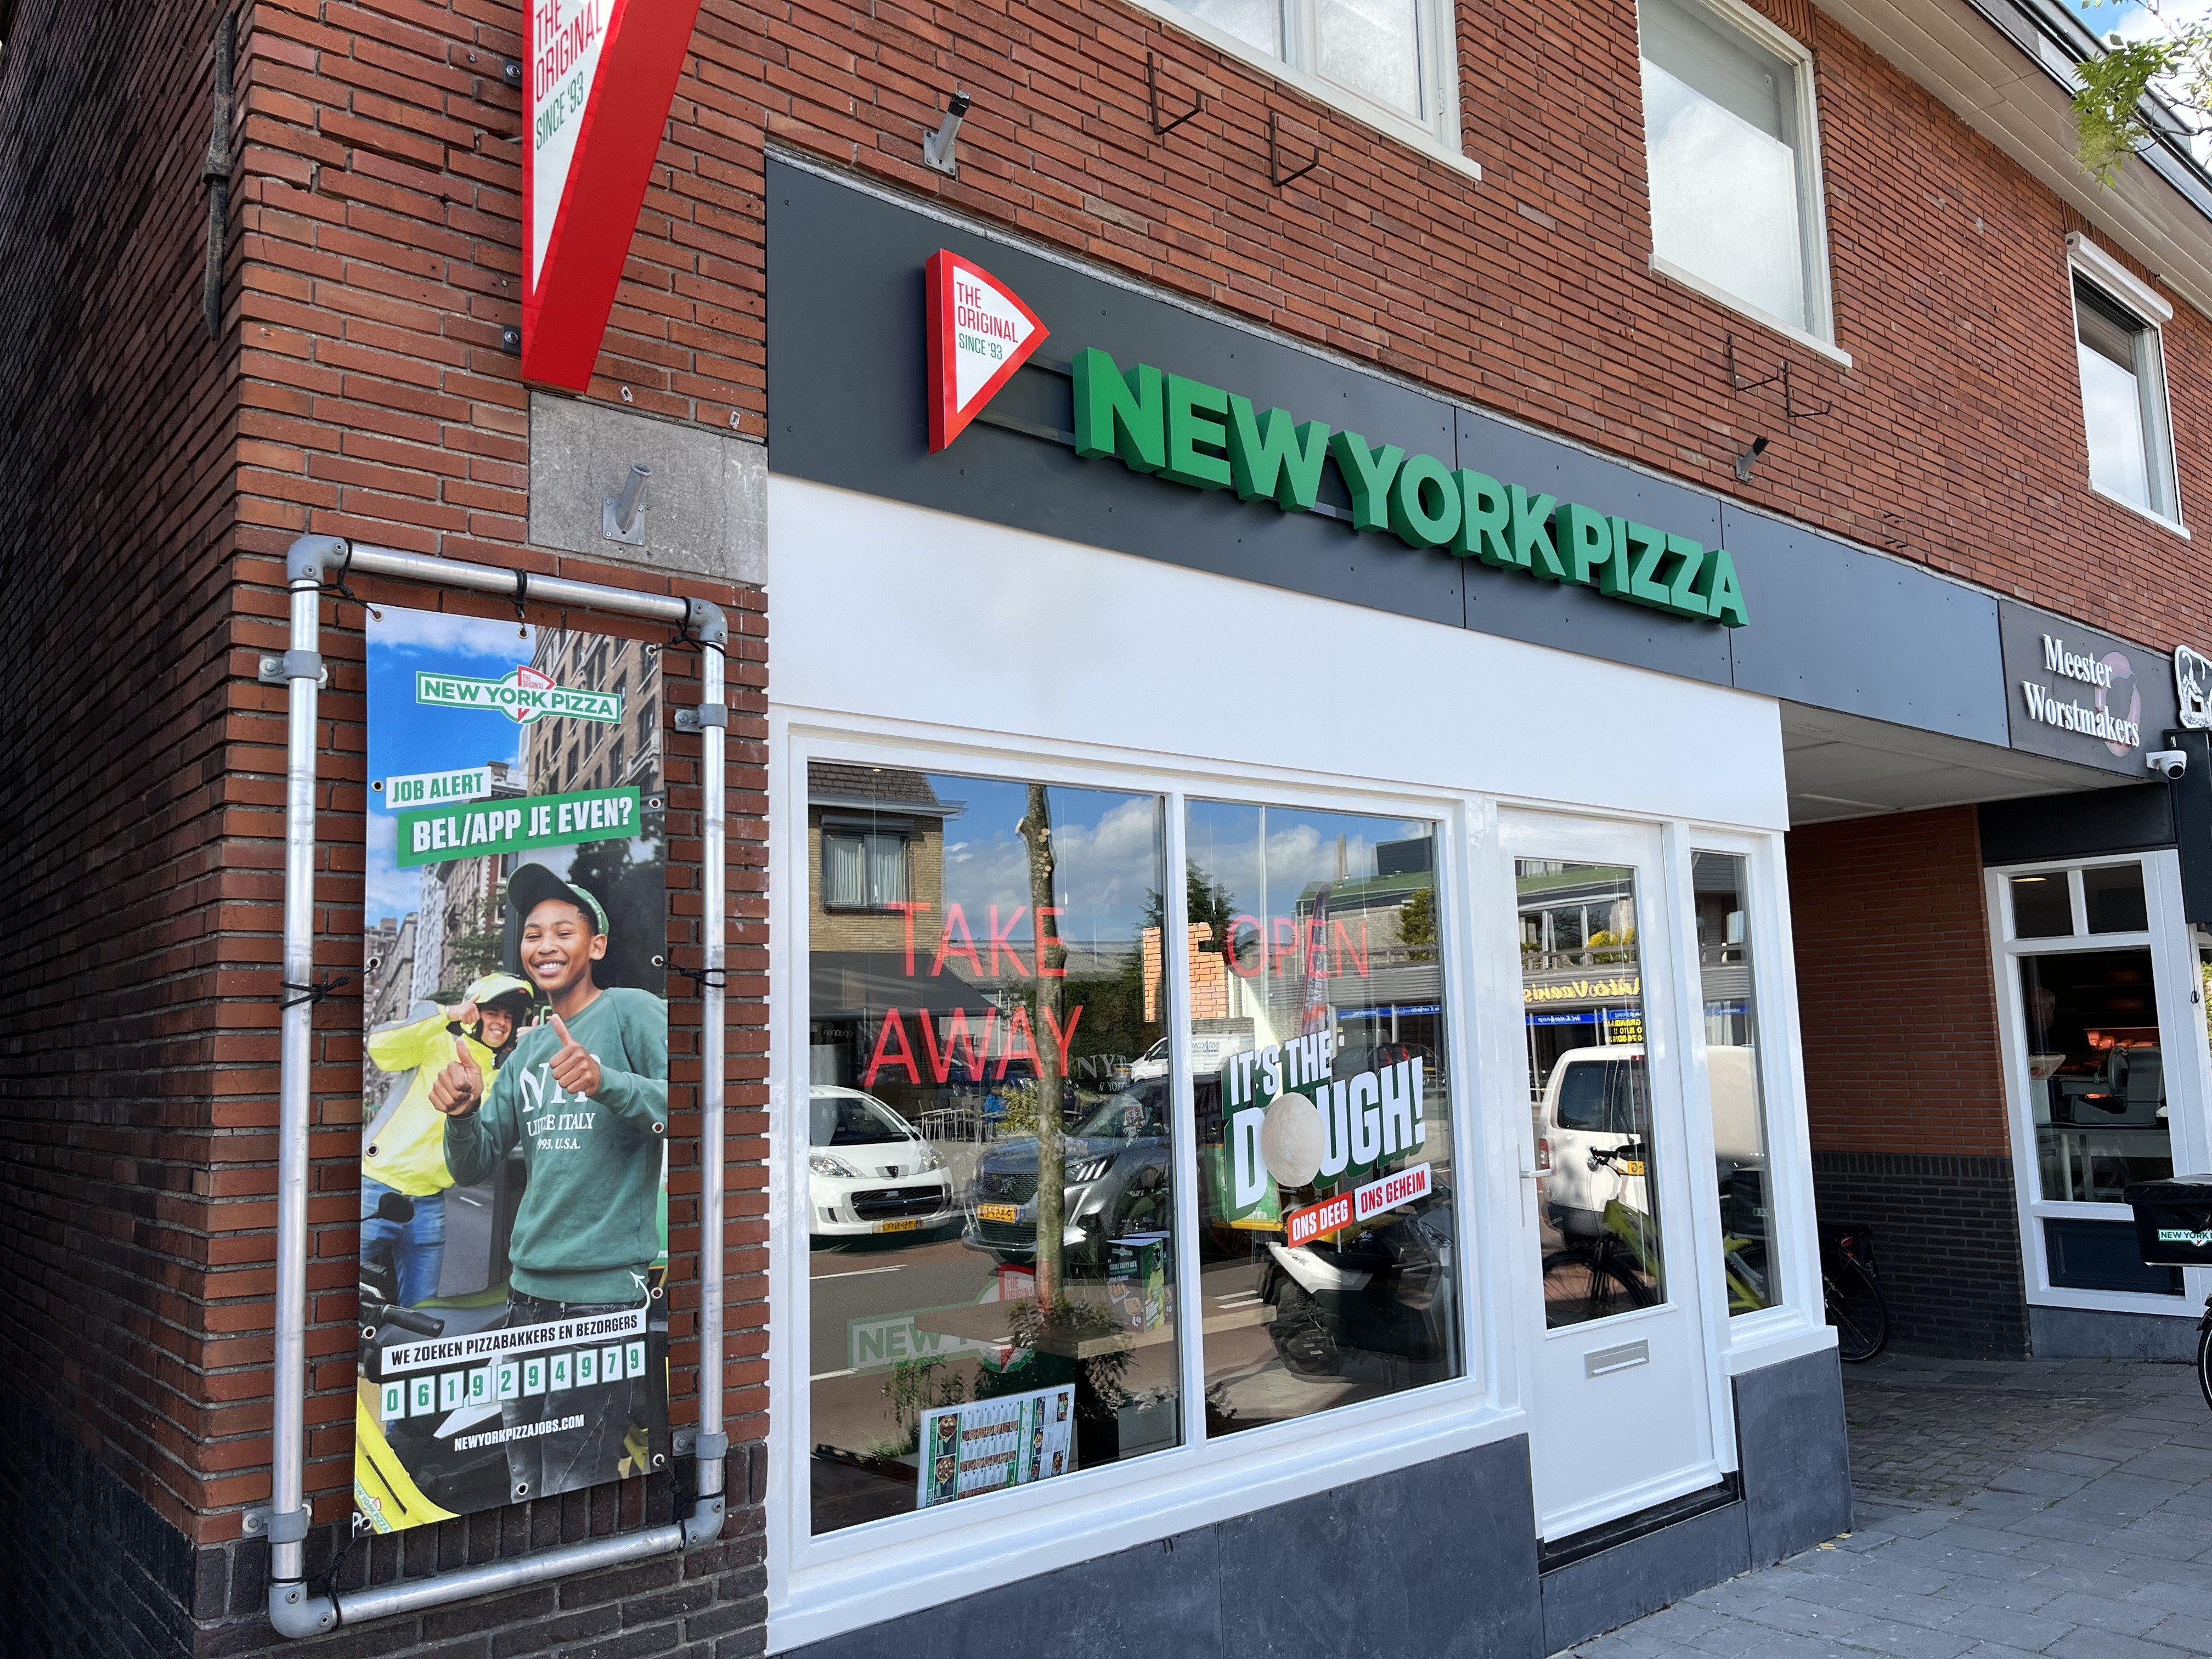 New York Pizza franchise vestiging Assendelft